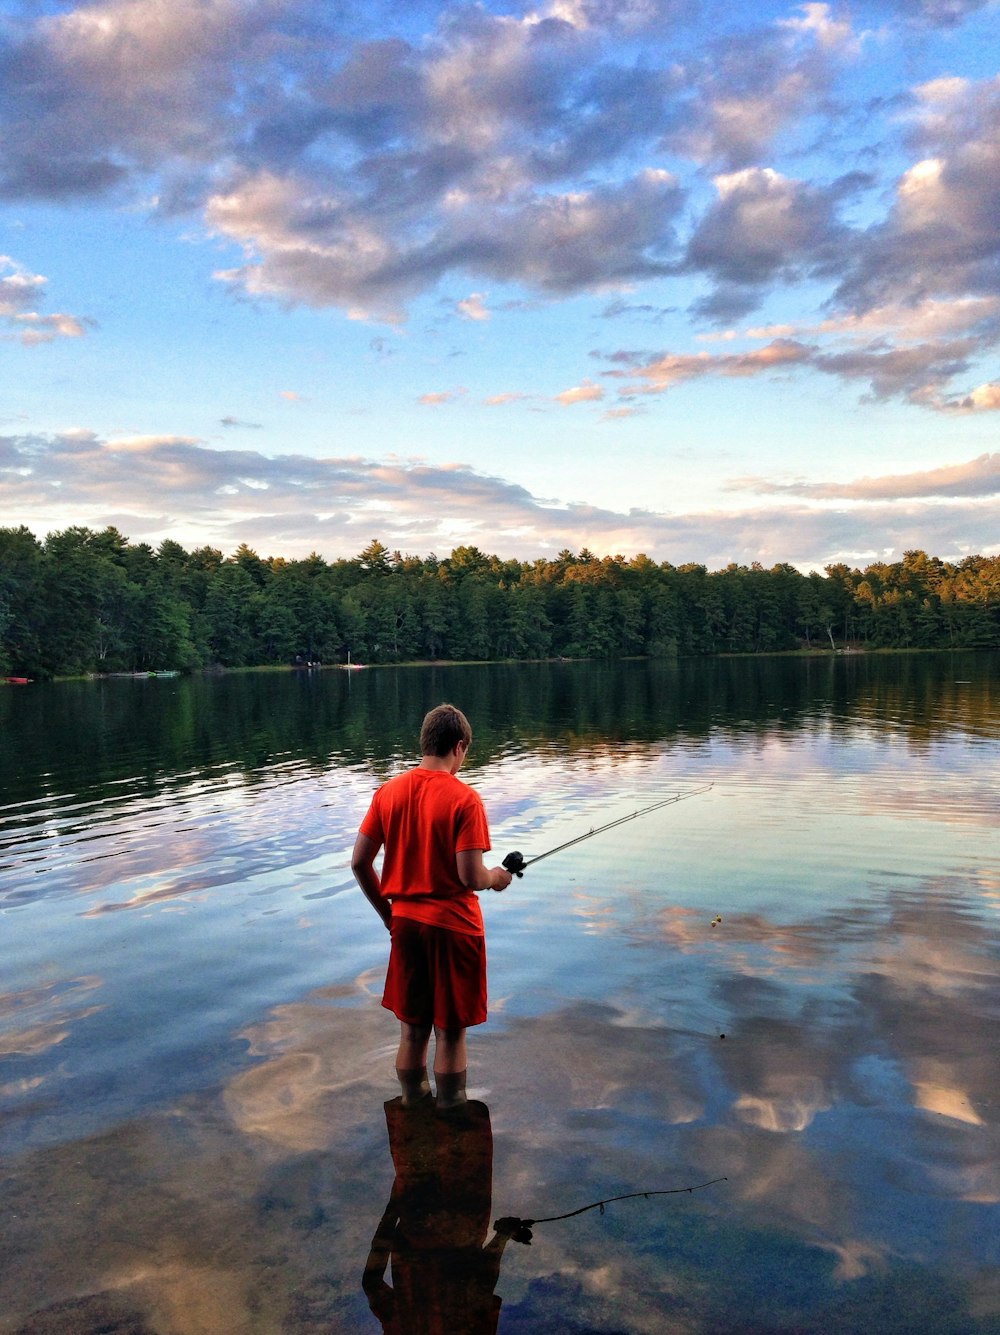 man in red shirt fishing on lake during daytime